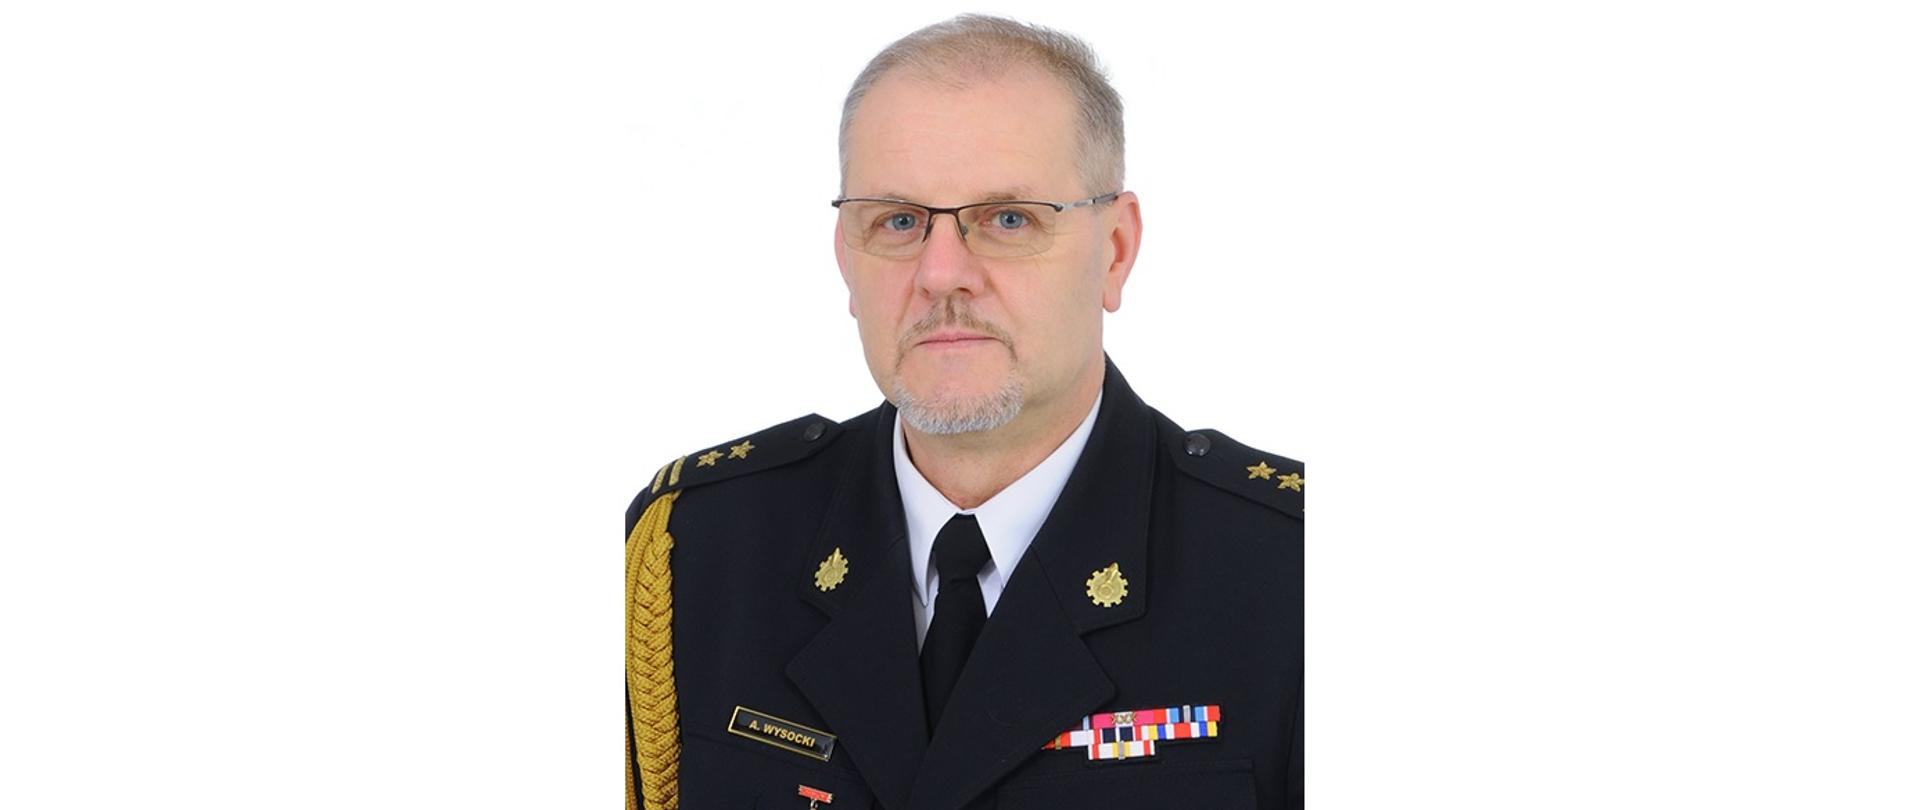 Zdjęcie portretowe Komendanta Powiatowego Państwowej Straży Pożarnej w Wołominie w mundurze galowym